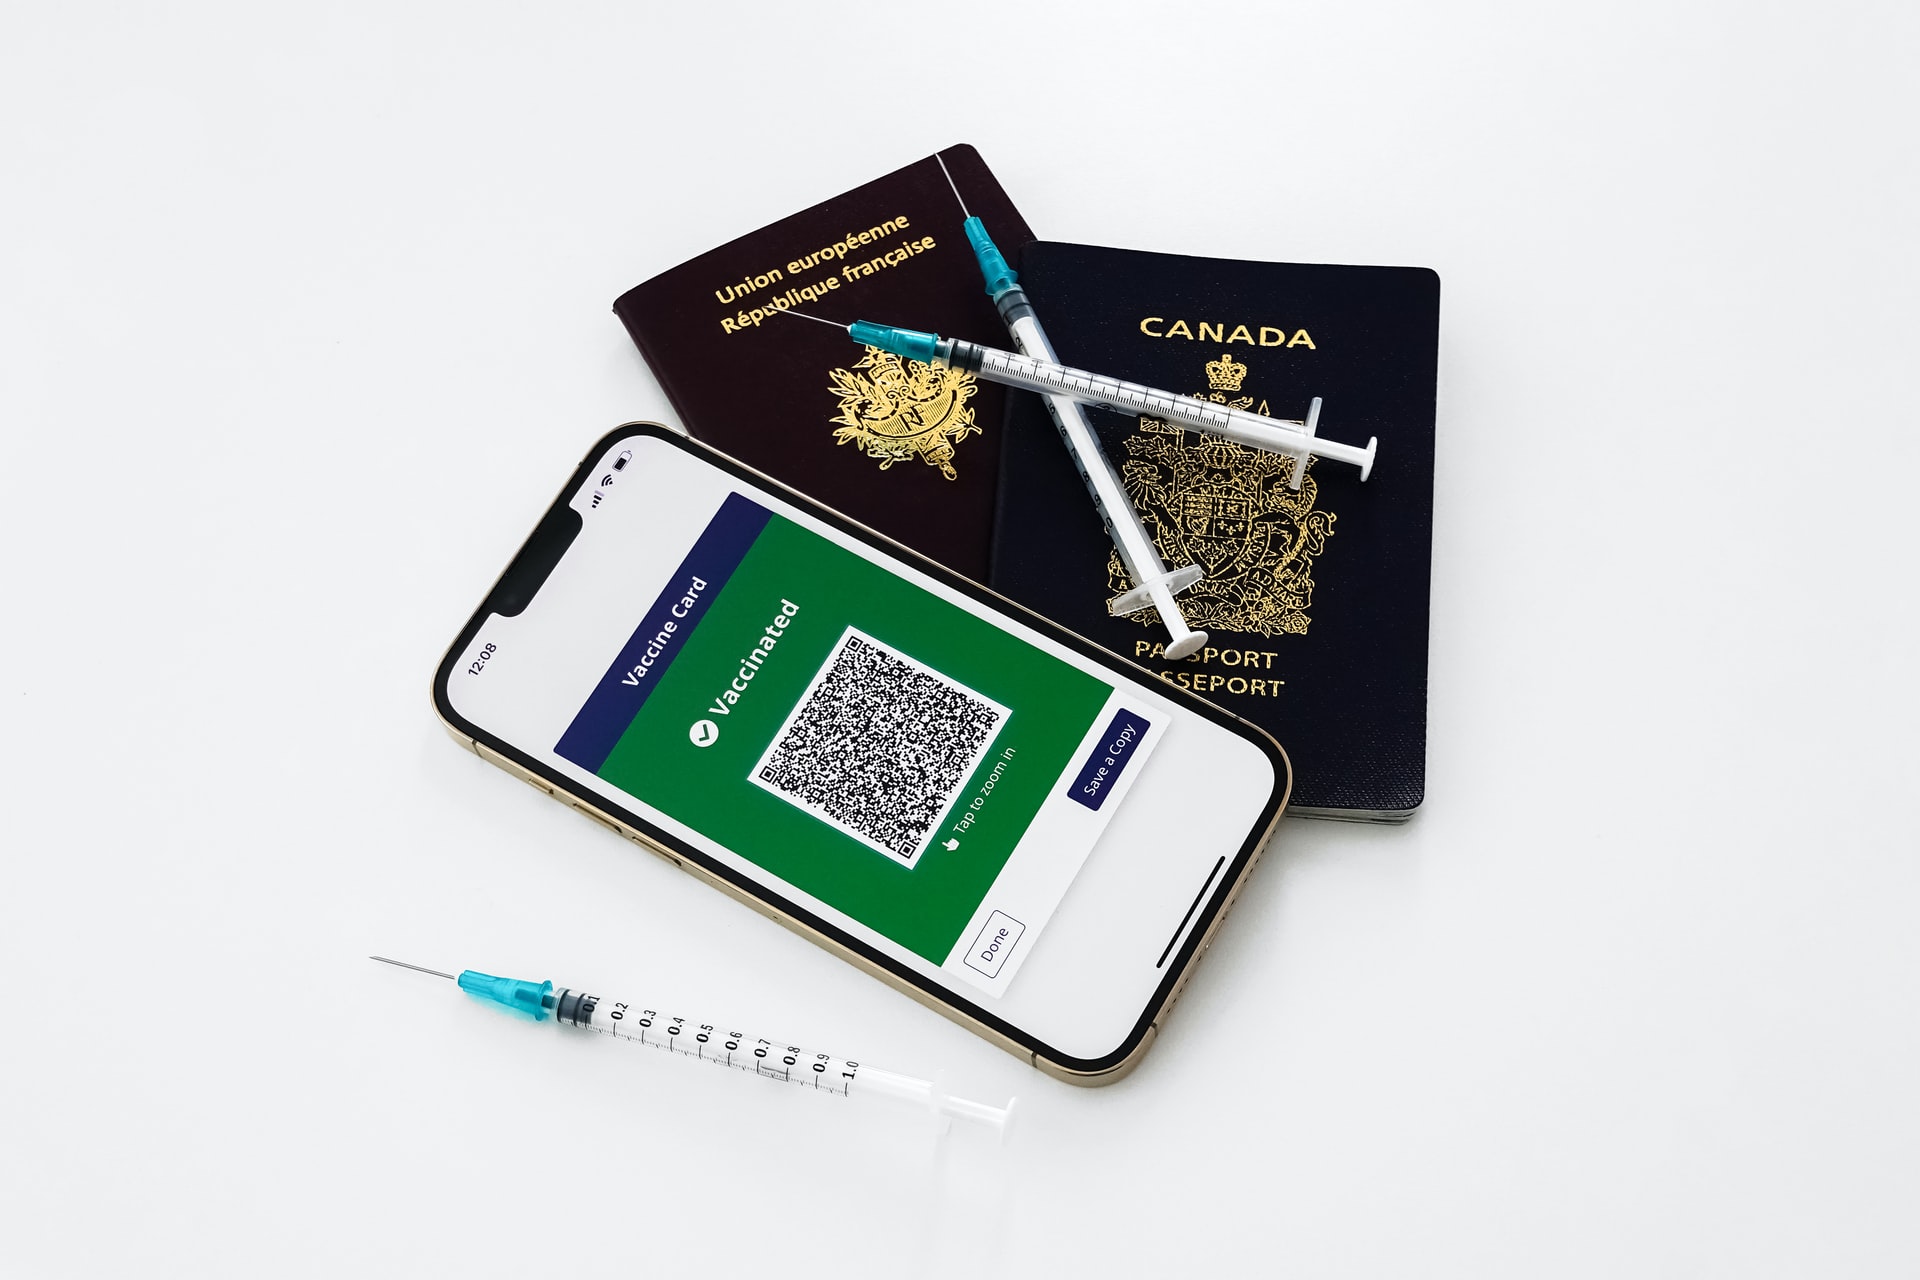 Smartphone and Passports